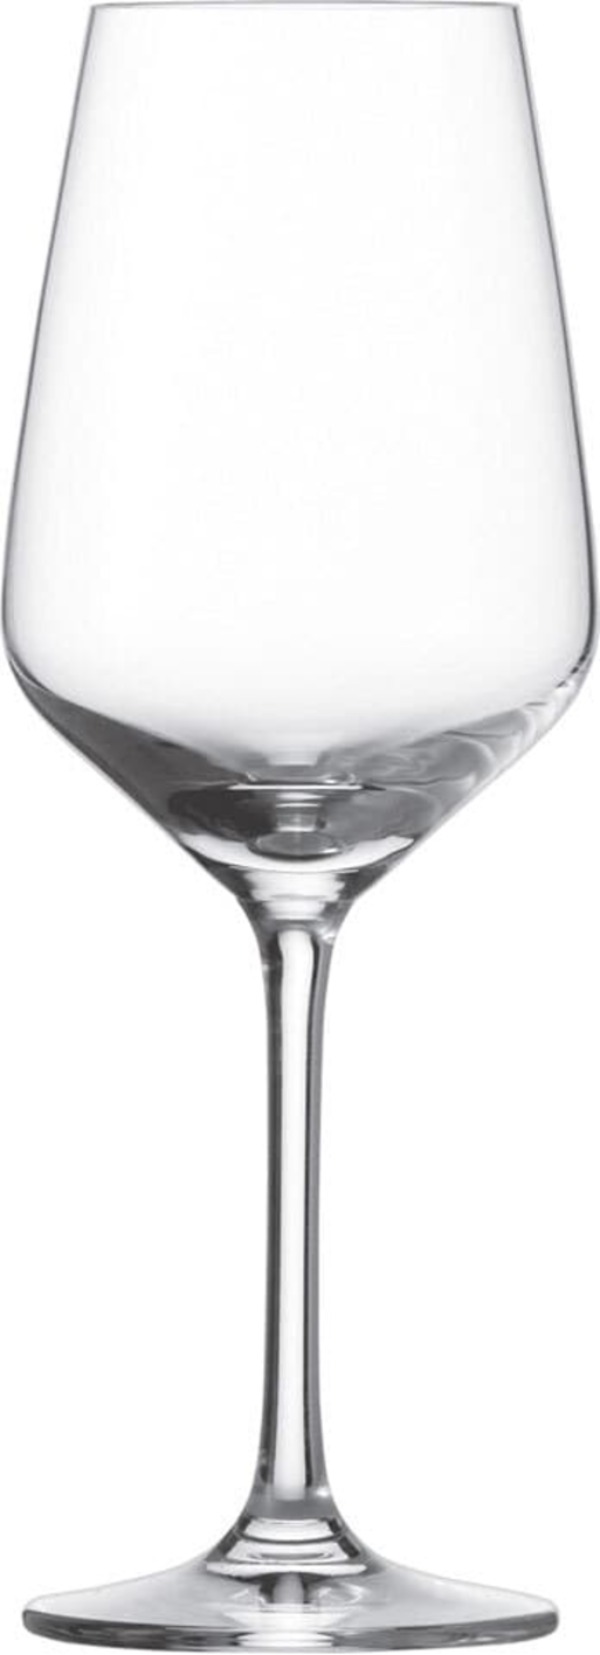 Bild 1 von SCHOTT ZWIESEL 6er Set Weißweinglas /Weinglas je 350 ml TASTE